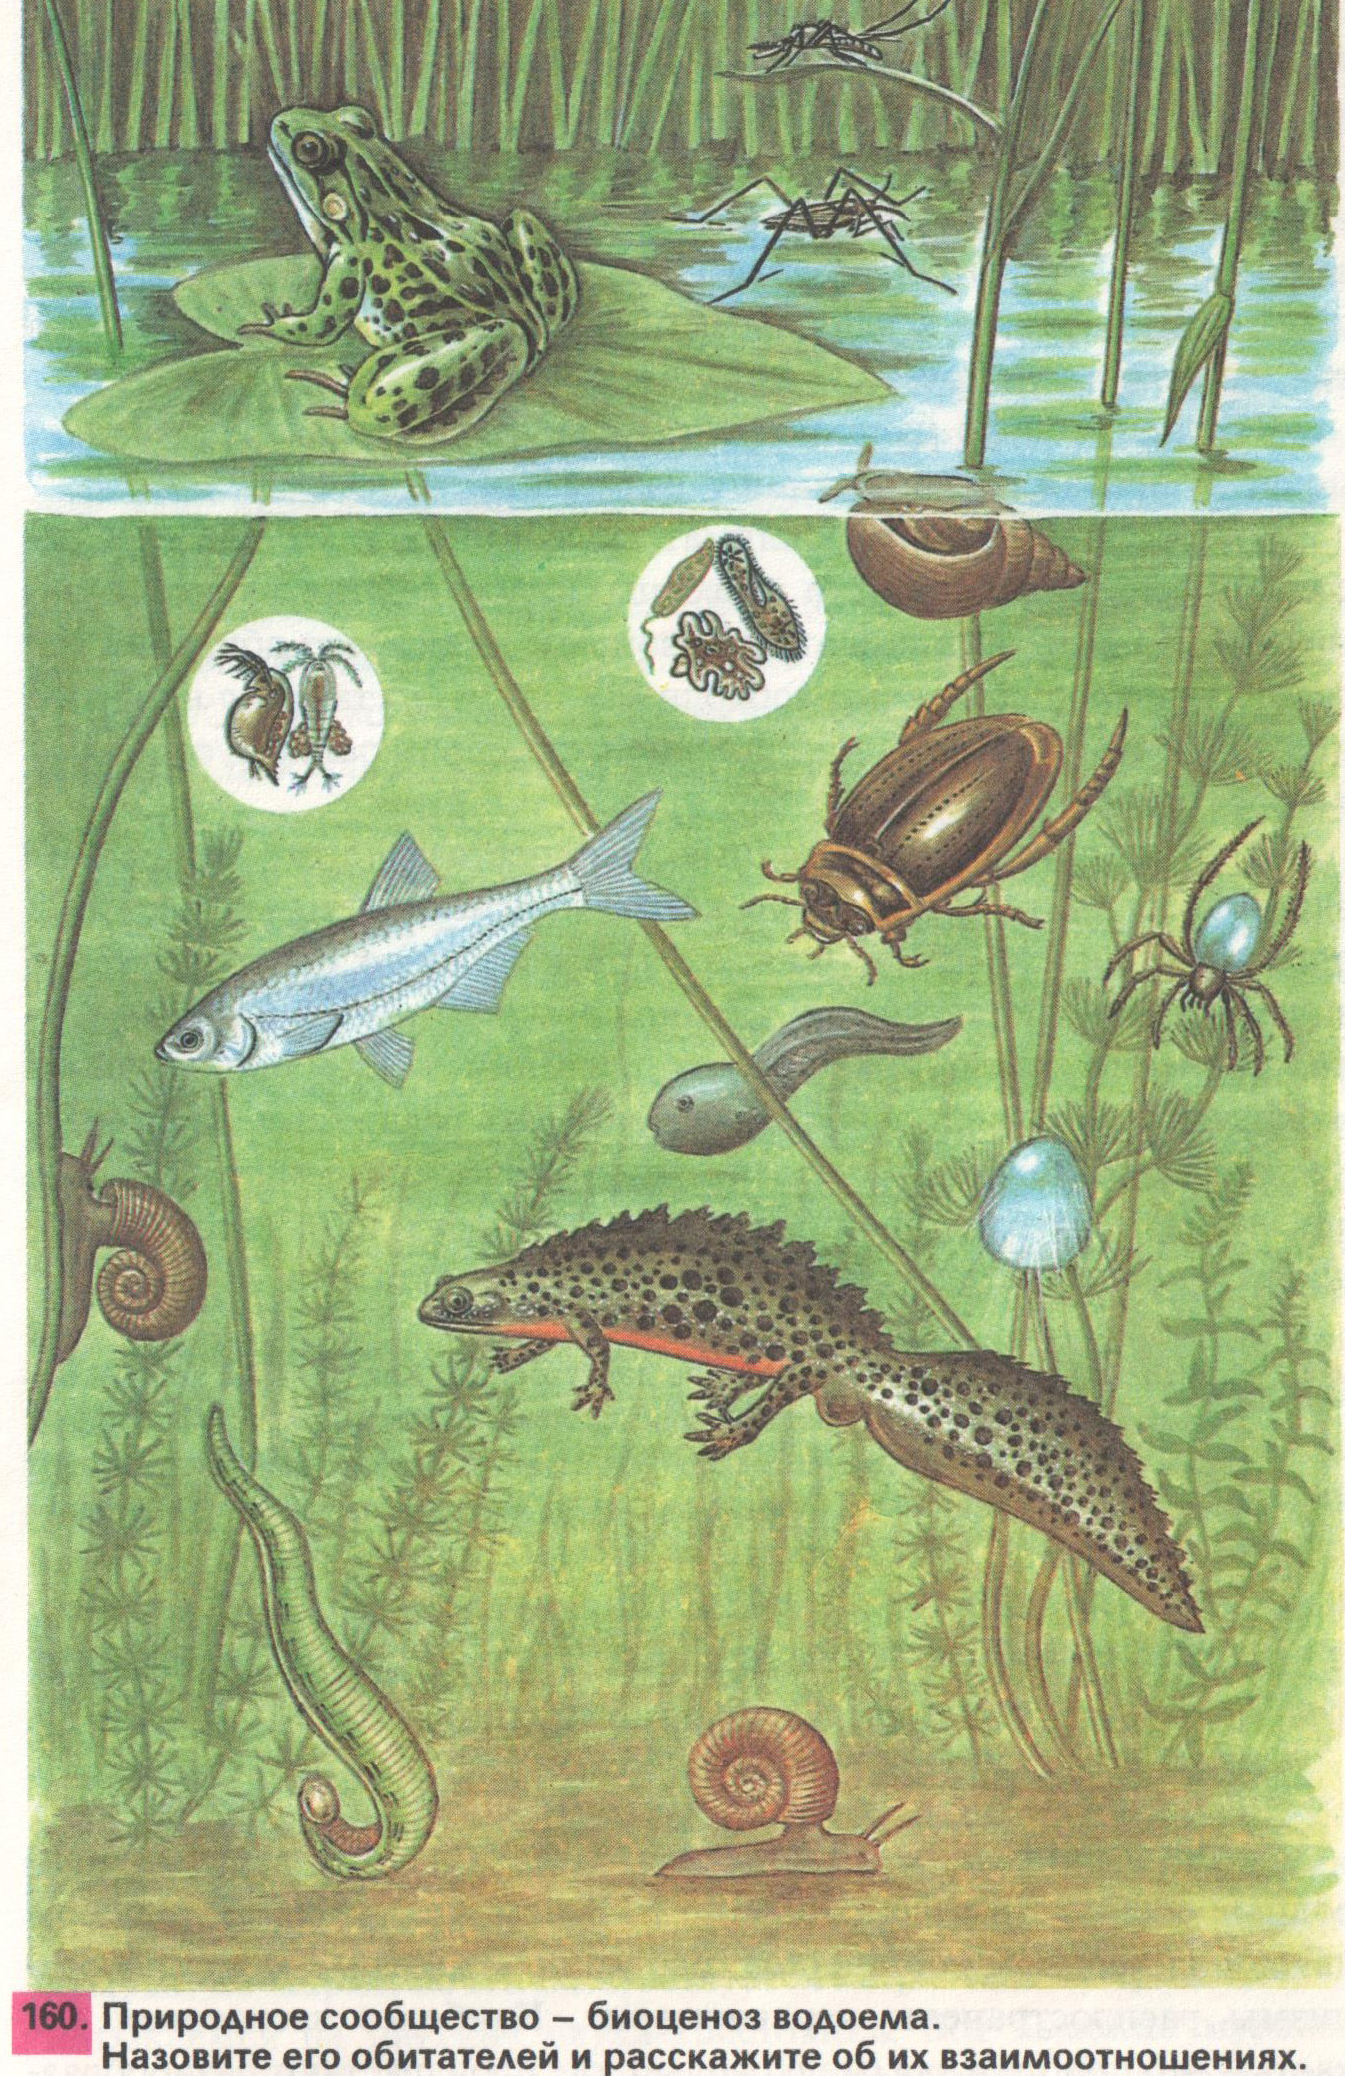 Организмы живущие в озере. Природное сообщество биоценоз водоема. Обитатели пруда. Обитатели природных сообществ. Обитатели пресноводных водоемов.